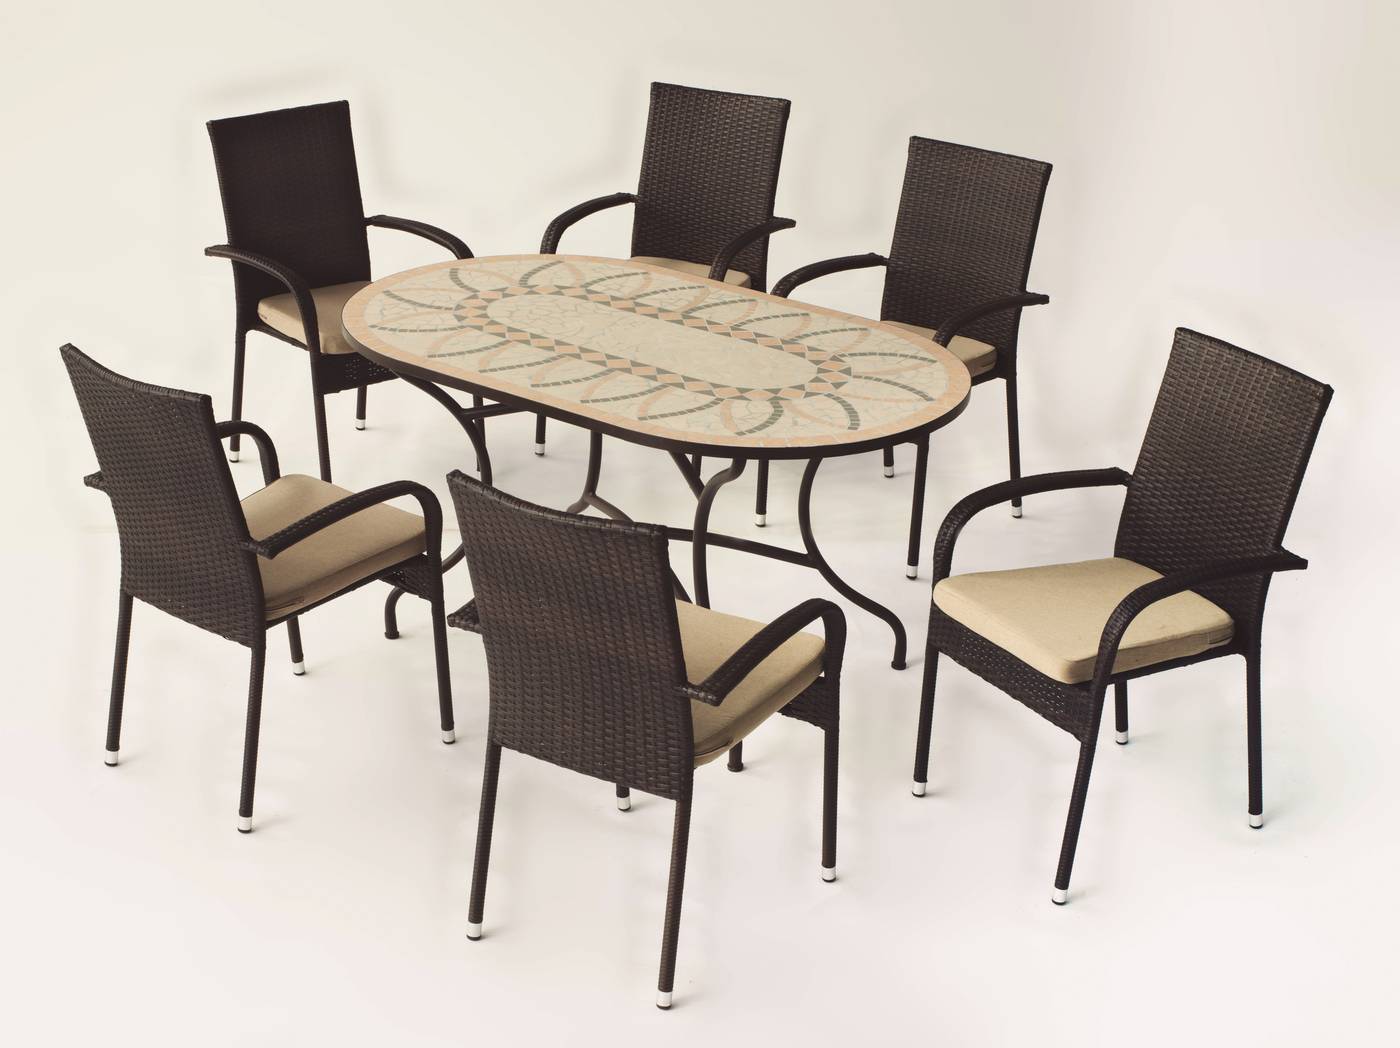 Conjunto Mosaico Bora-Bergamo - Conjunto de forja color bronce: mesa con tablero mosaico de 150 cm + 6 sillones con cojines asiento.